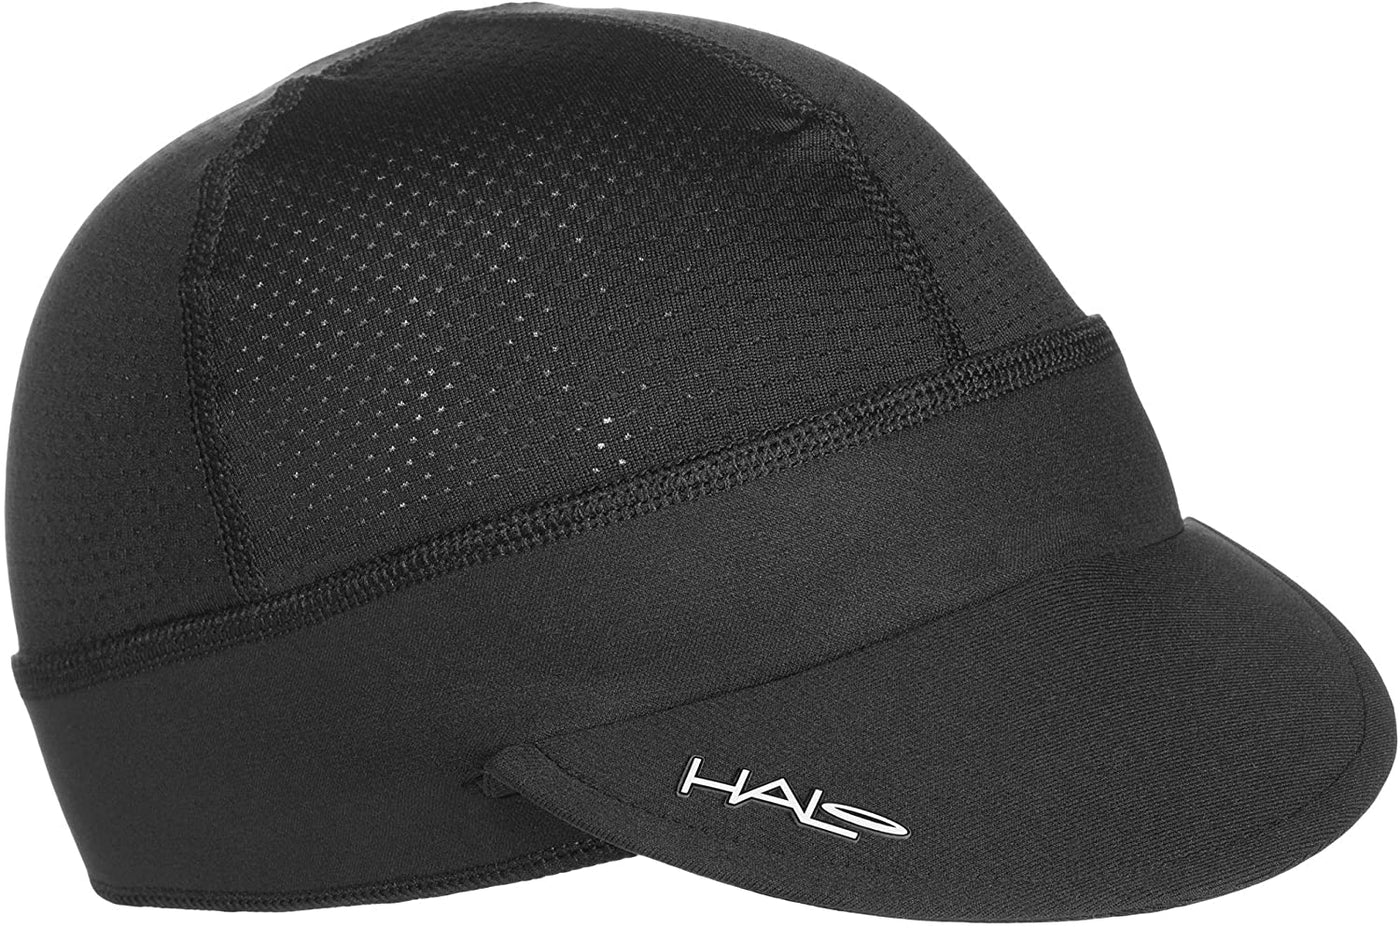 Halo Cycling Cap - Cyclop.in